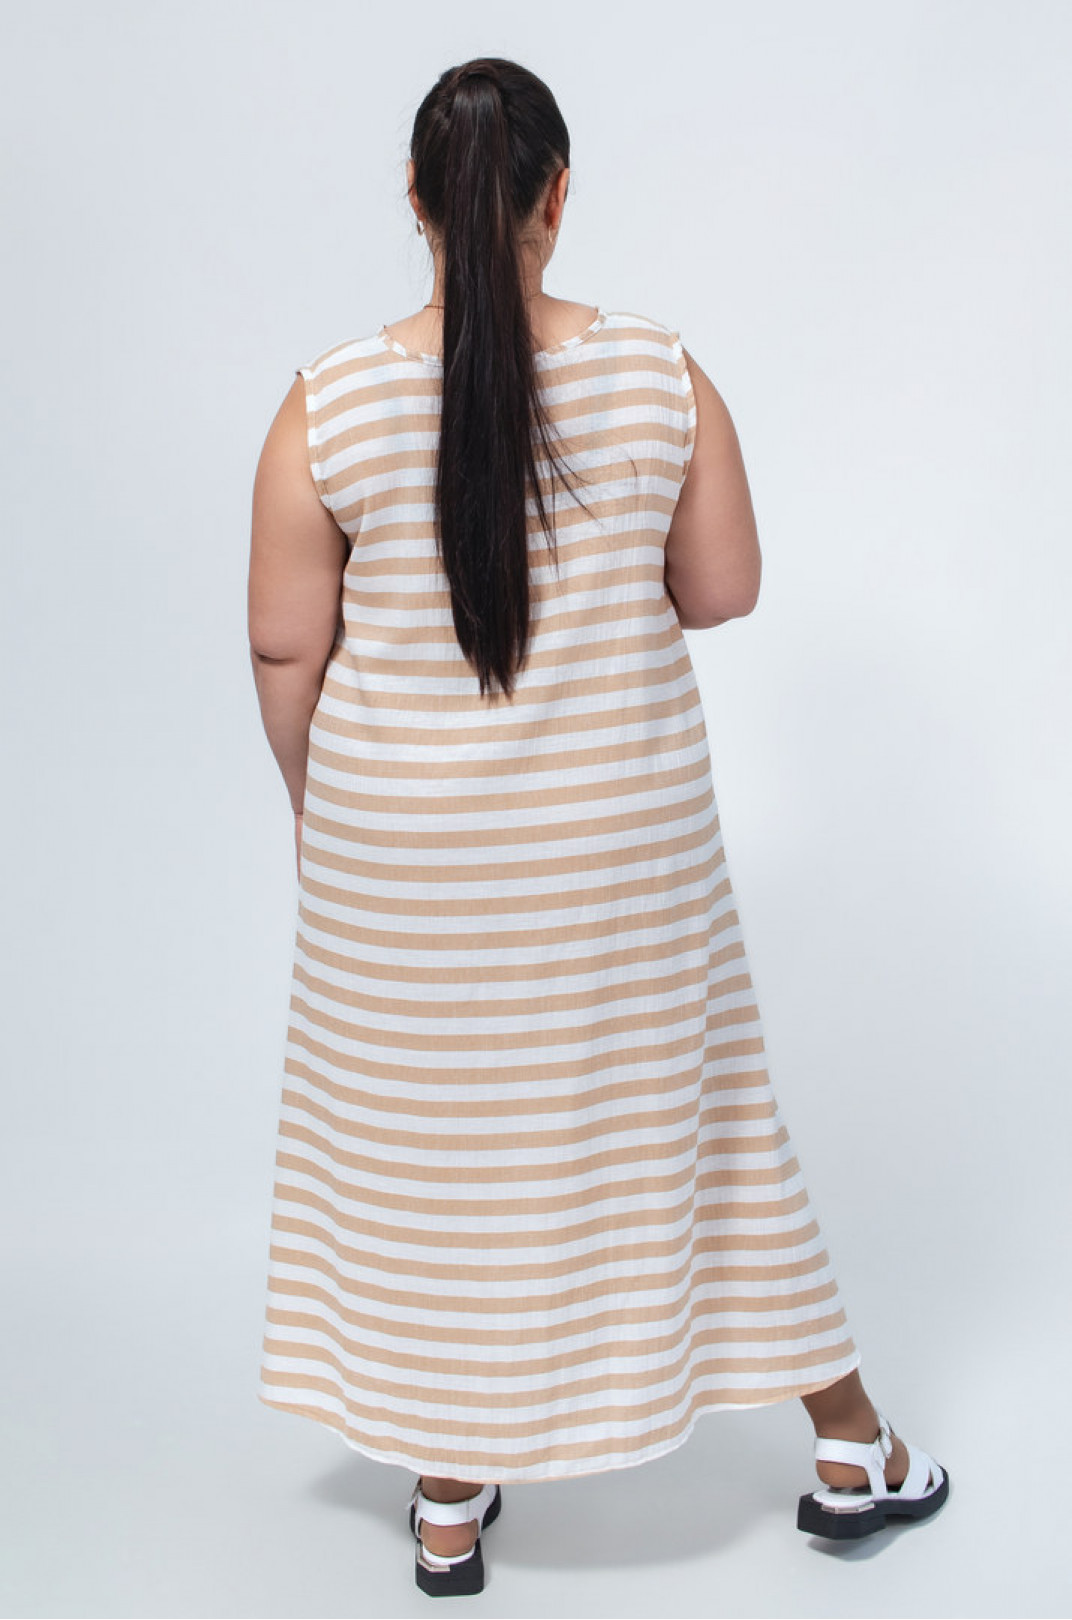 Сарафан-платье в горизонтальную полоску батал